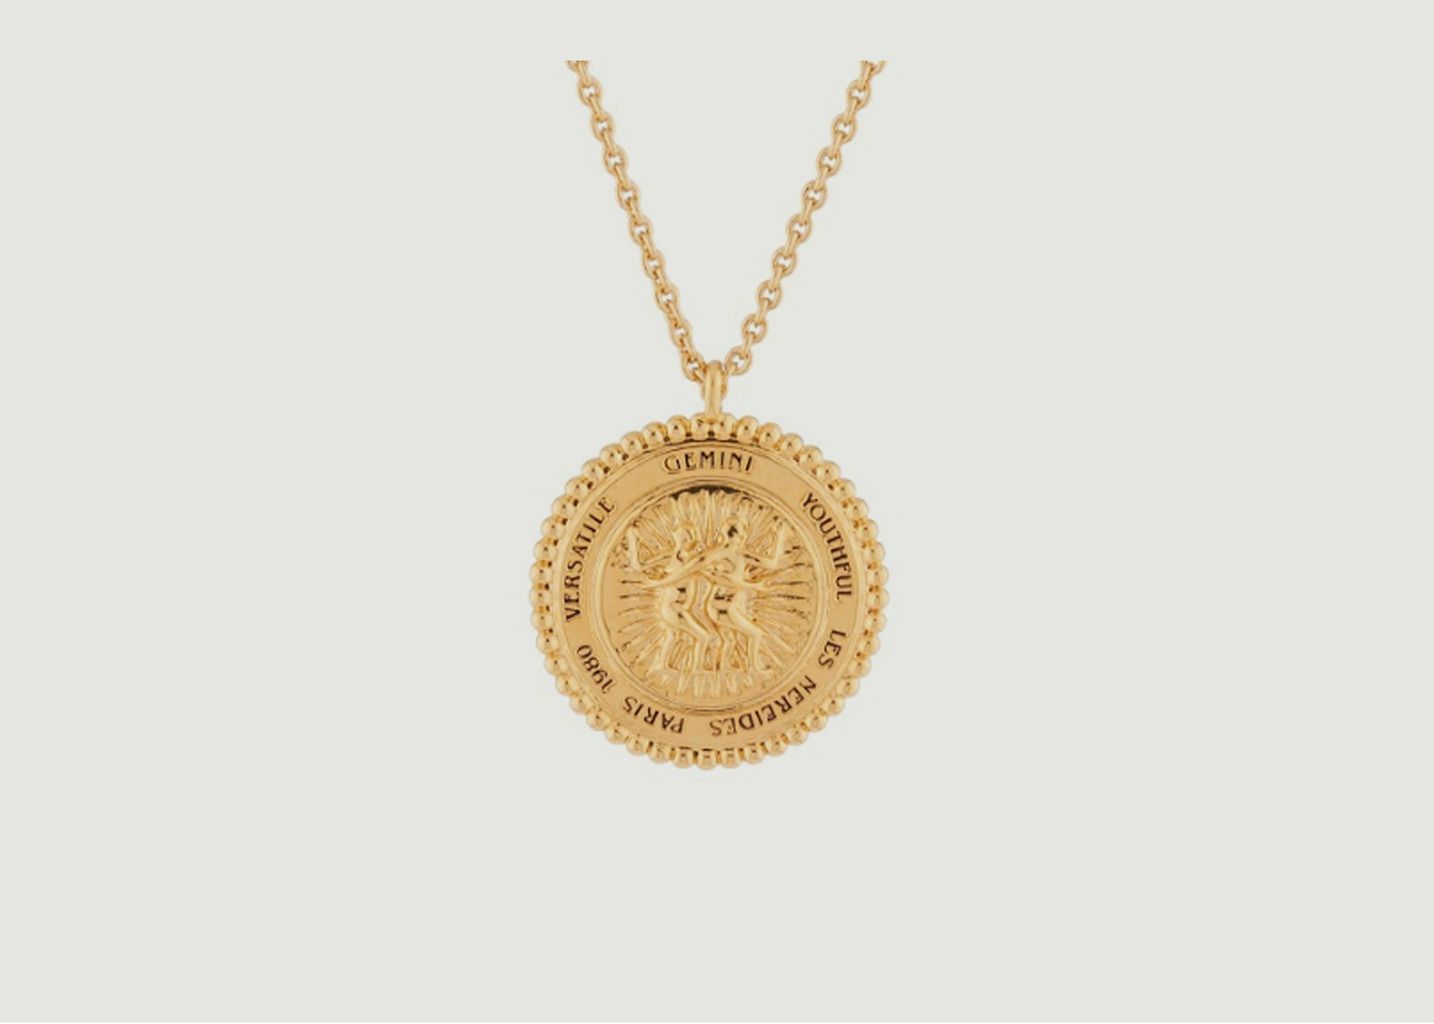 Gemini zodiac sign necklace - Les Néréides